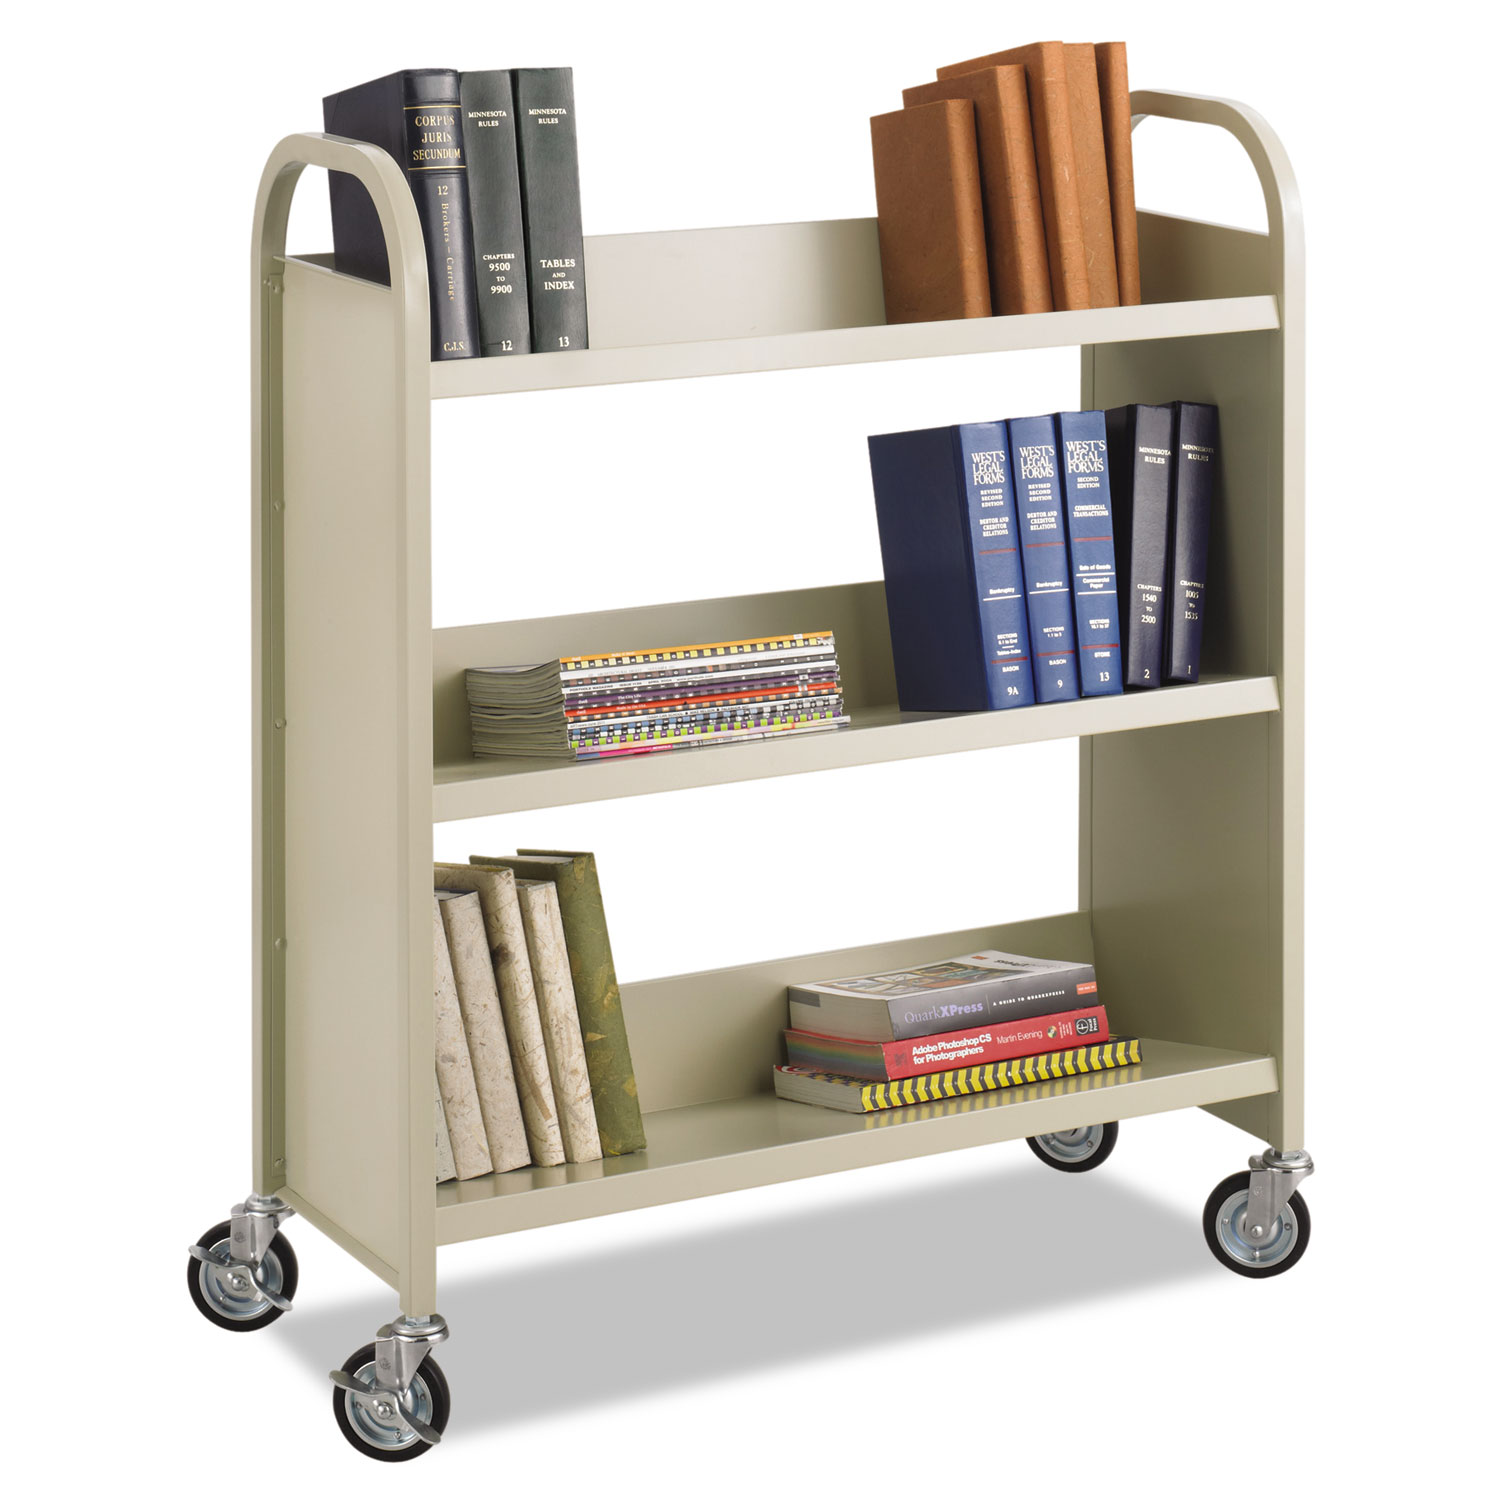  Safco 5358SA Steel Book Cart, Three-Shelf, 36w x 14.5d x 43.5h, Sand (SAF5358SA) 